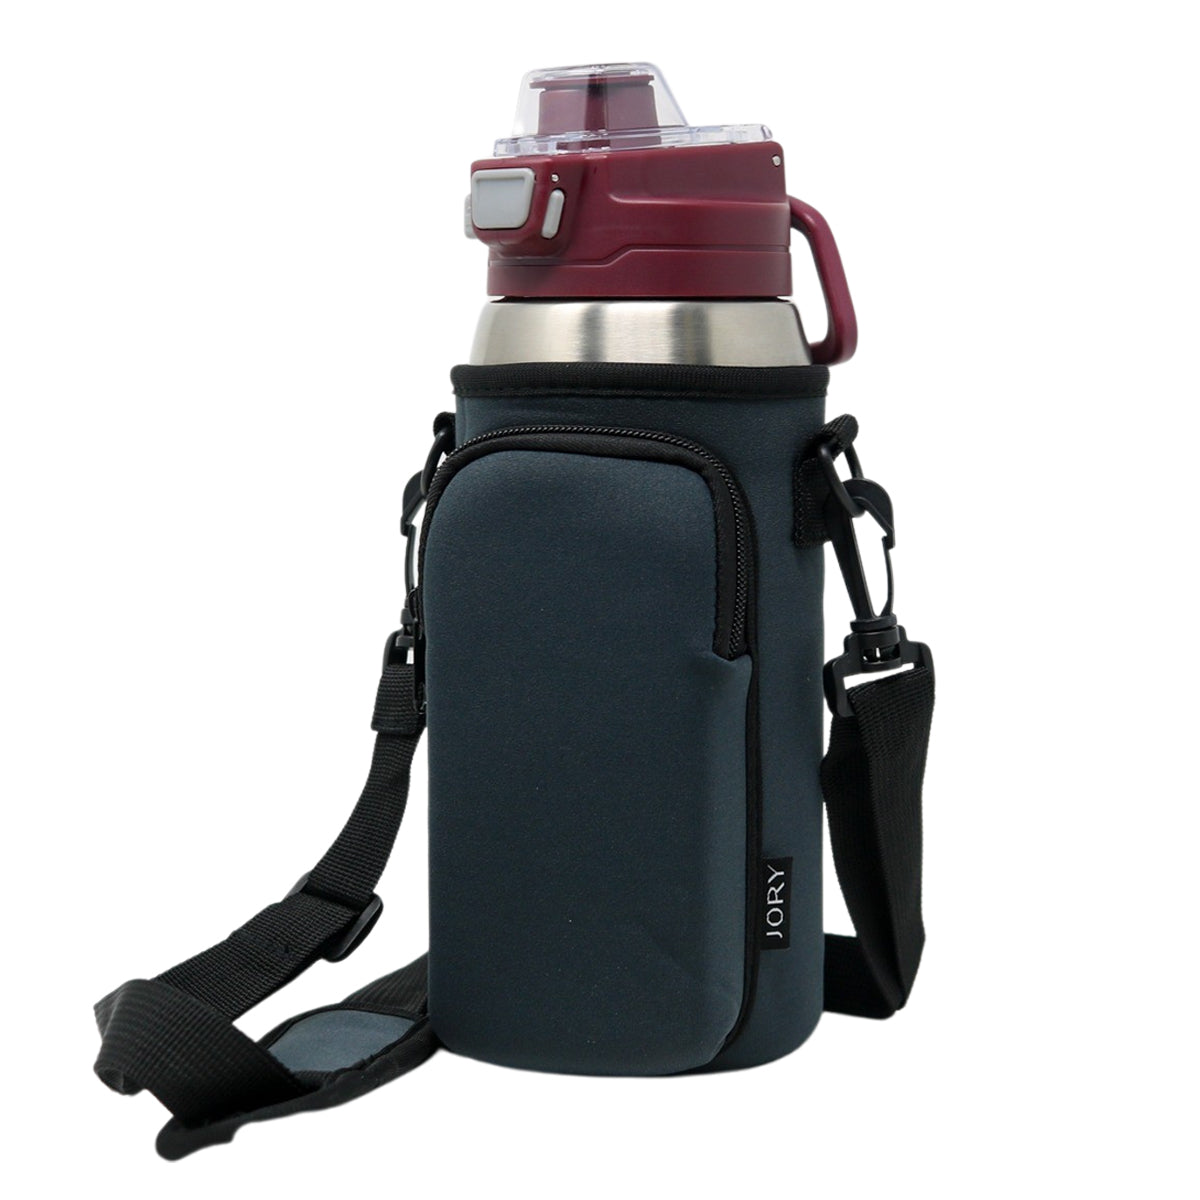 Cross Body Bag Bottle Holder | Charcoal Grey